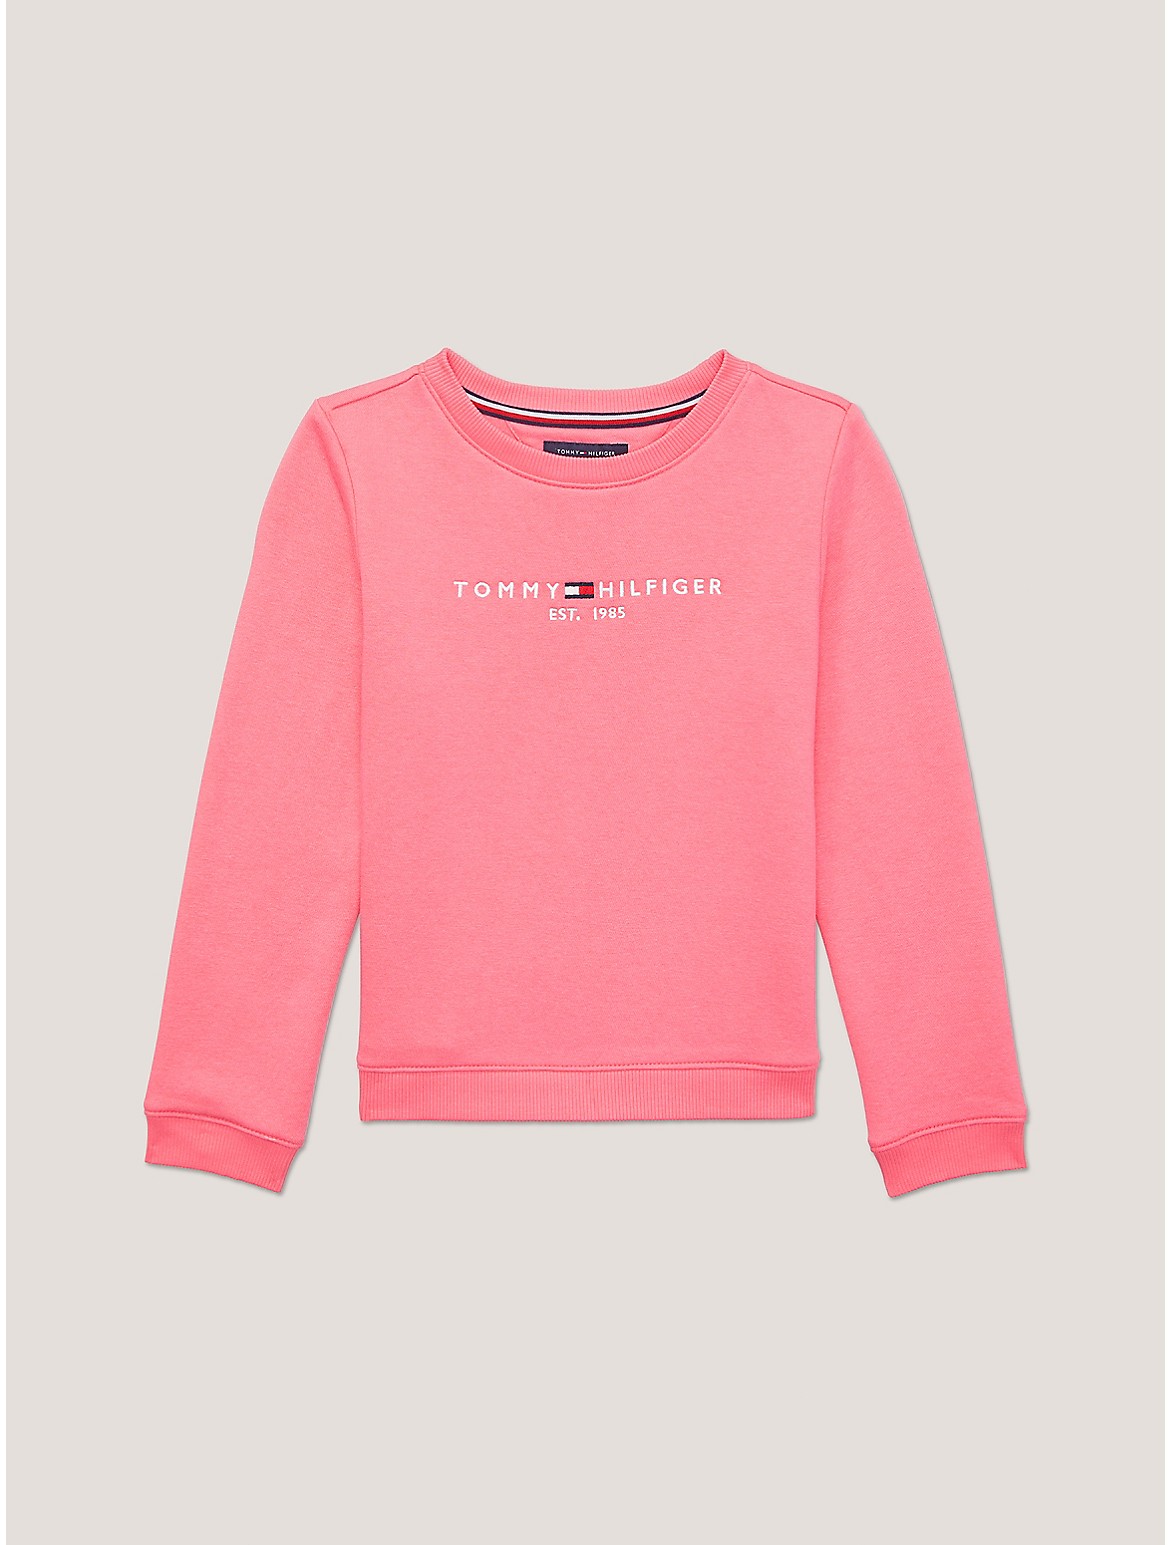 Tommy Hilfiger Girls' Kids' Hilfiger Logo Sweatshirt